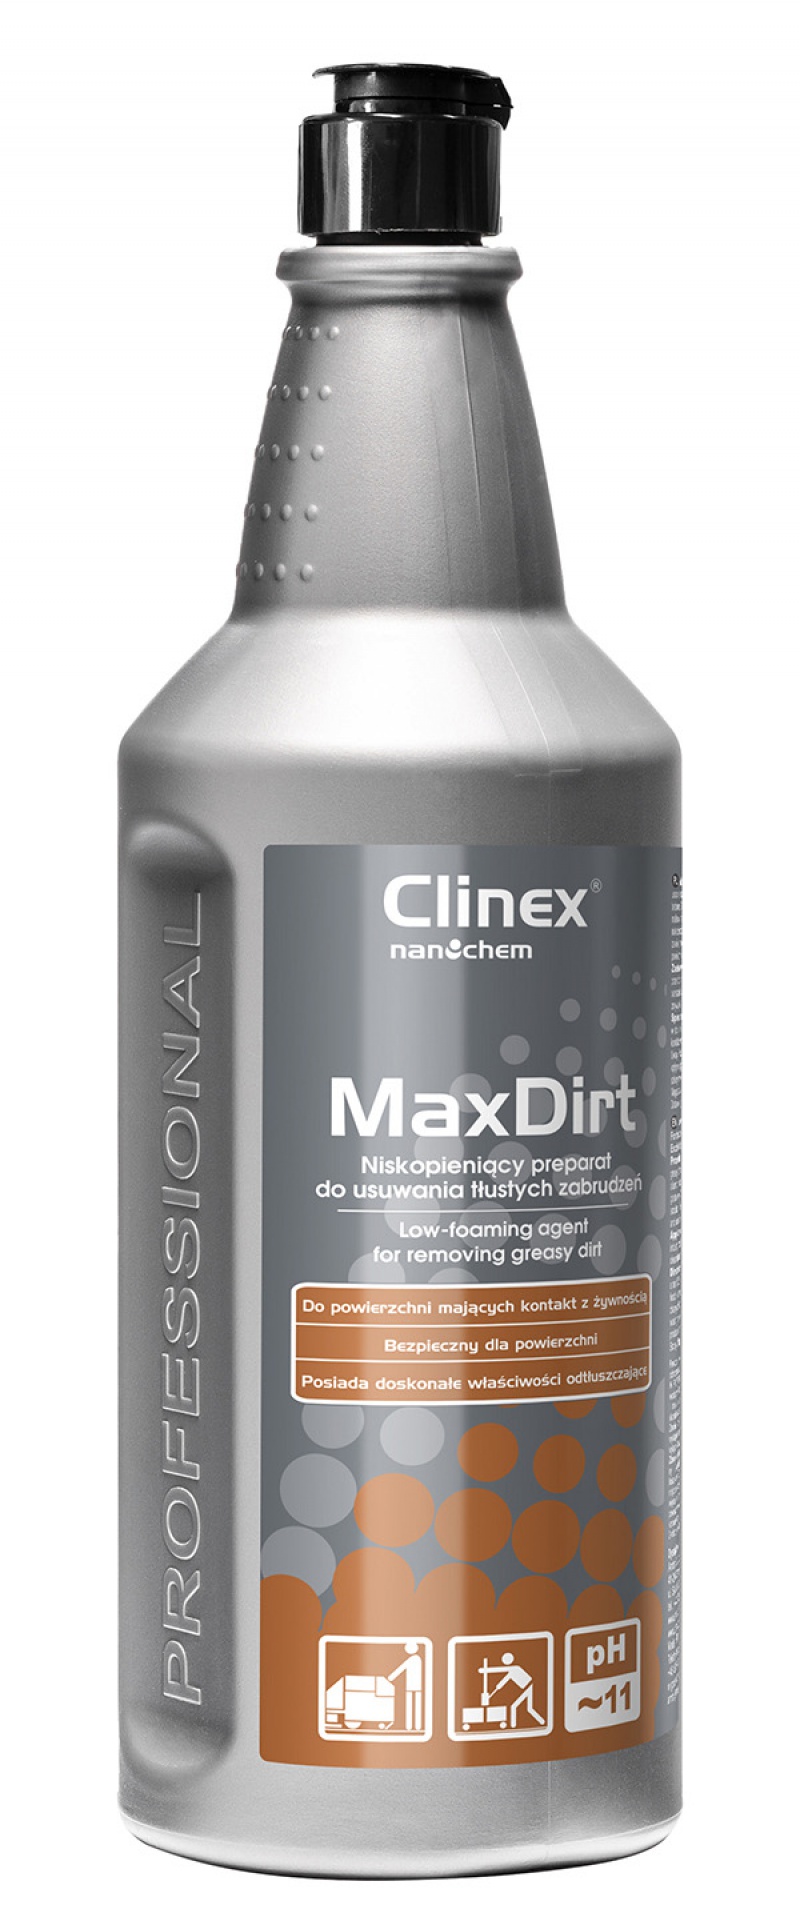 Preparat CLINEX 4 Max Dirt 1L, do usuwania tłustych zabrudzeń